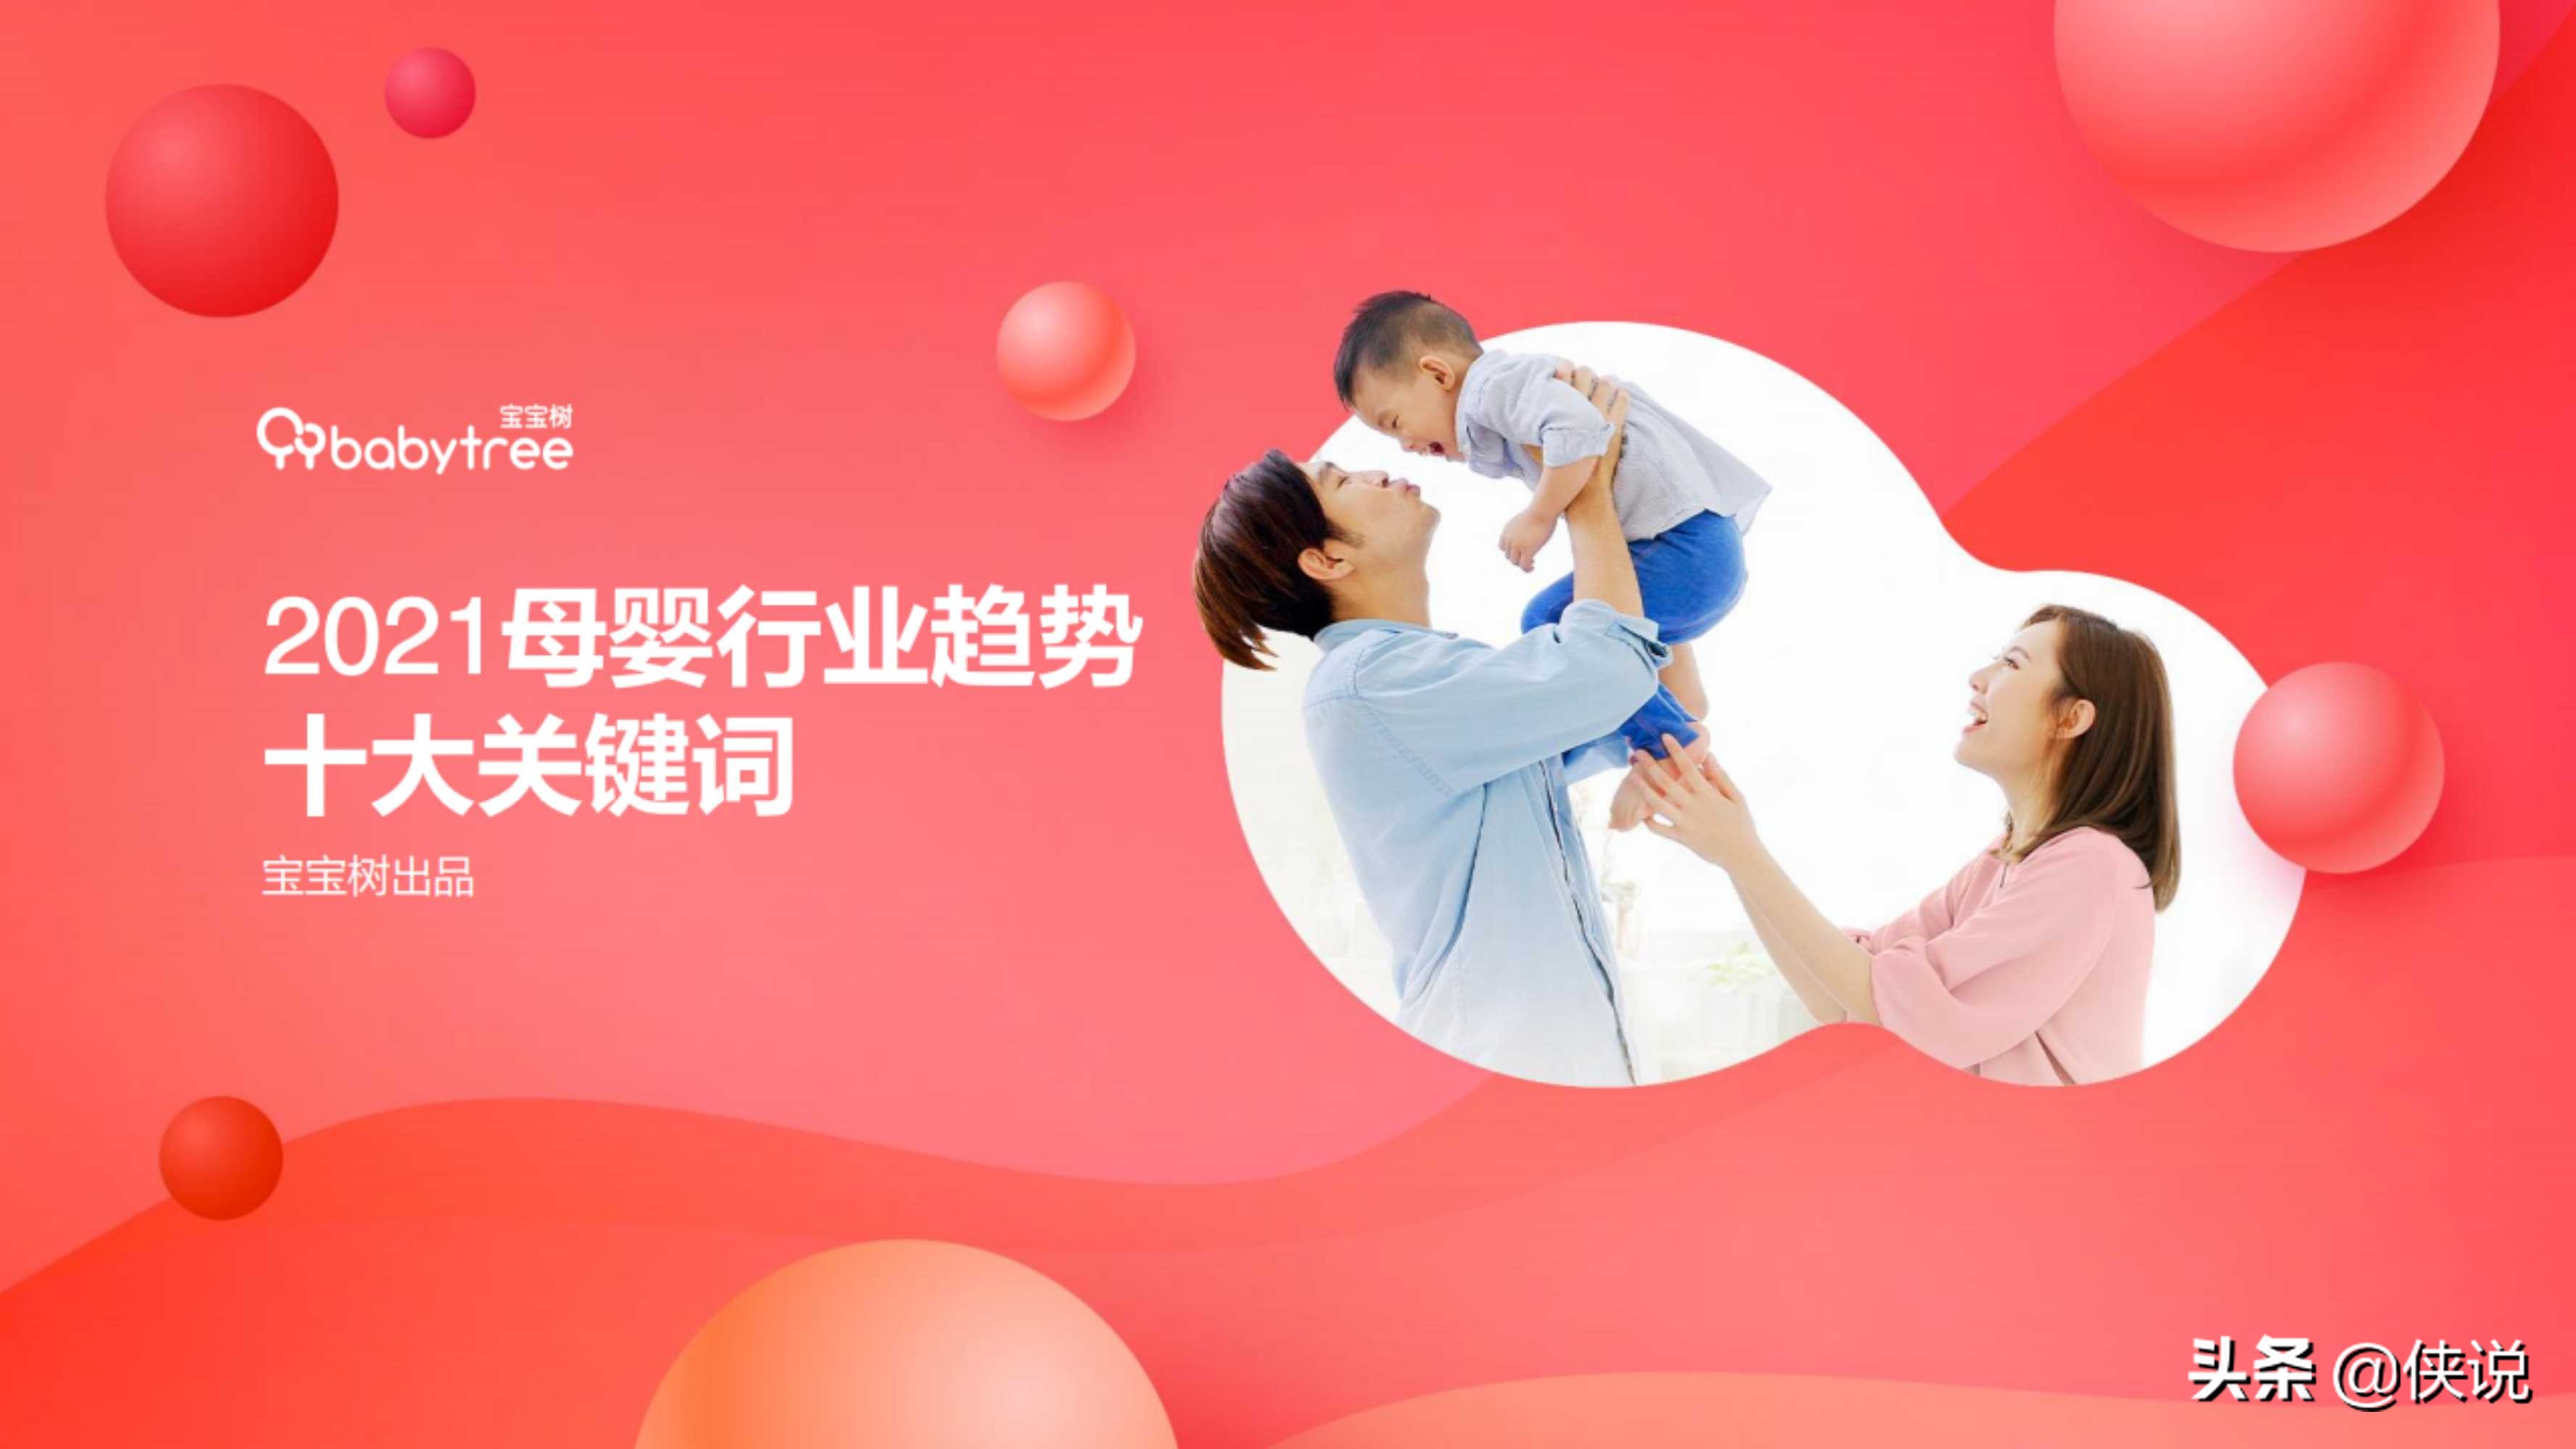 2020年度中国家庭孕育方式白皮书（宝宝树）